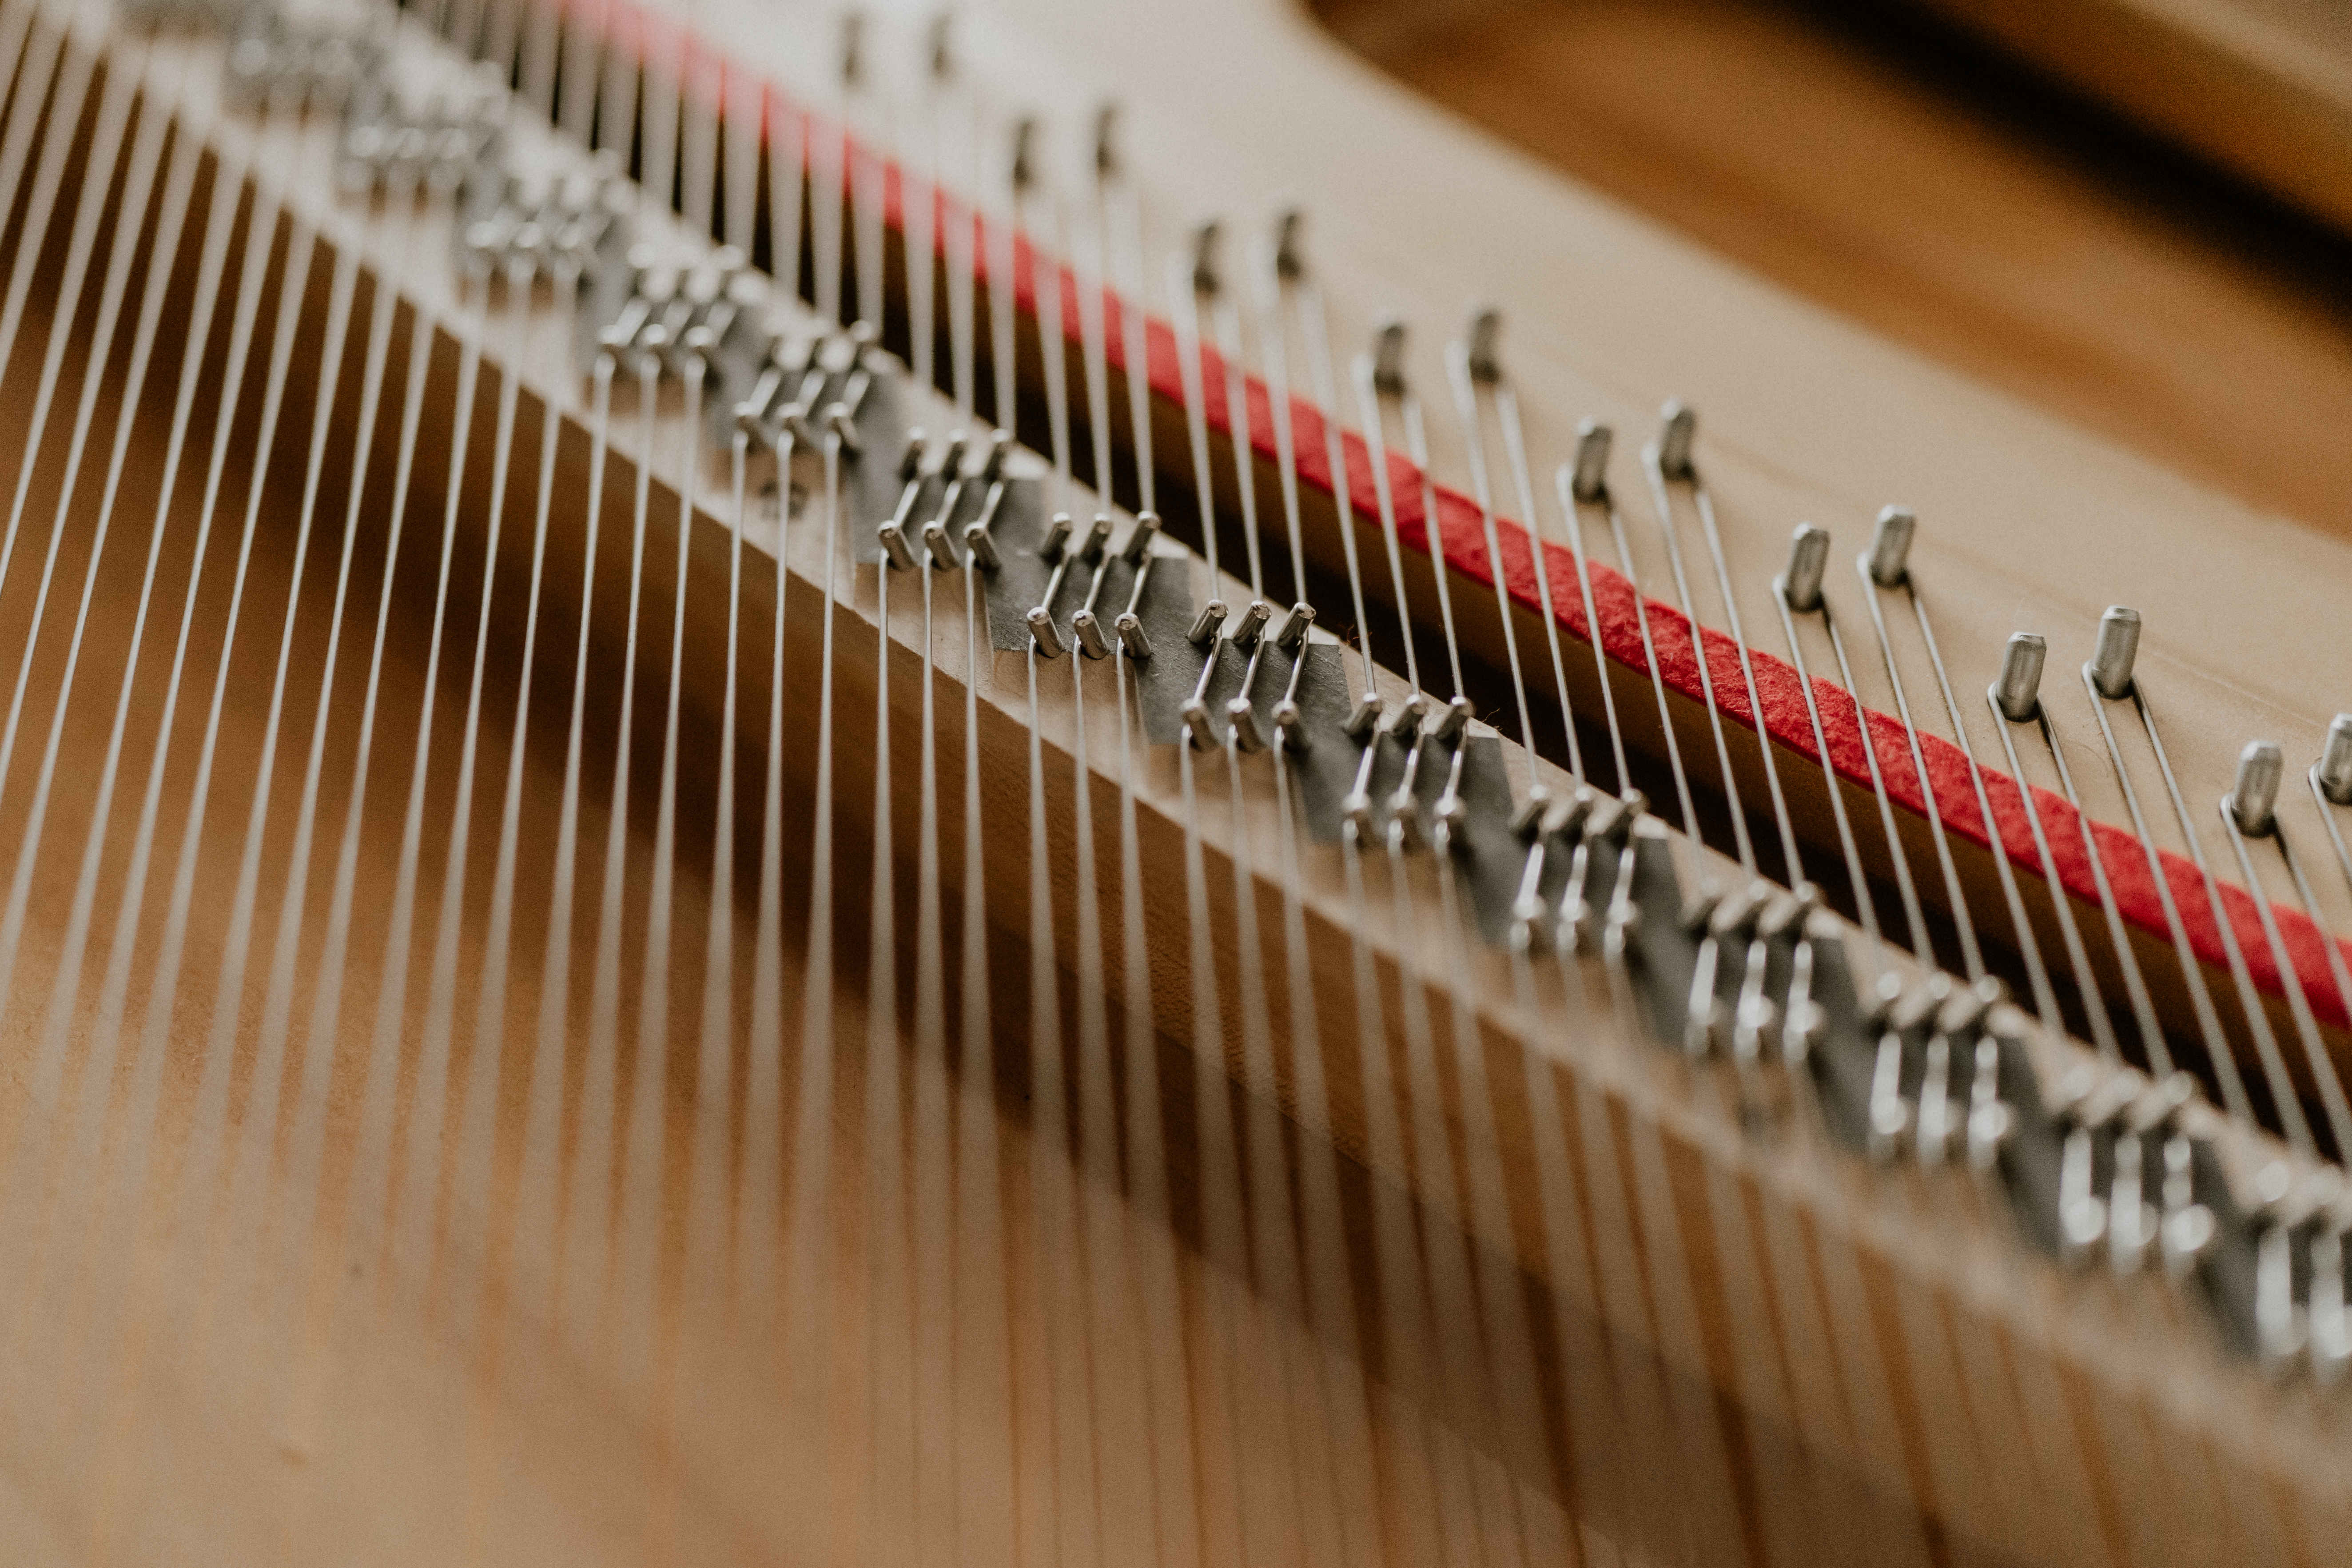 piano strings up close